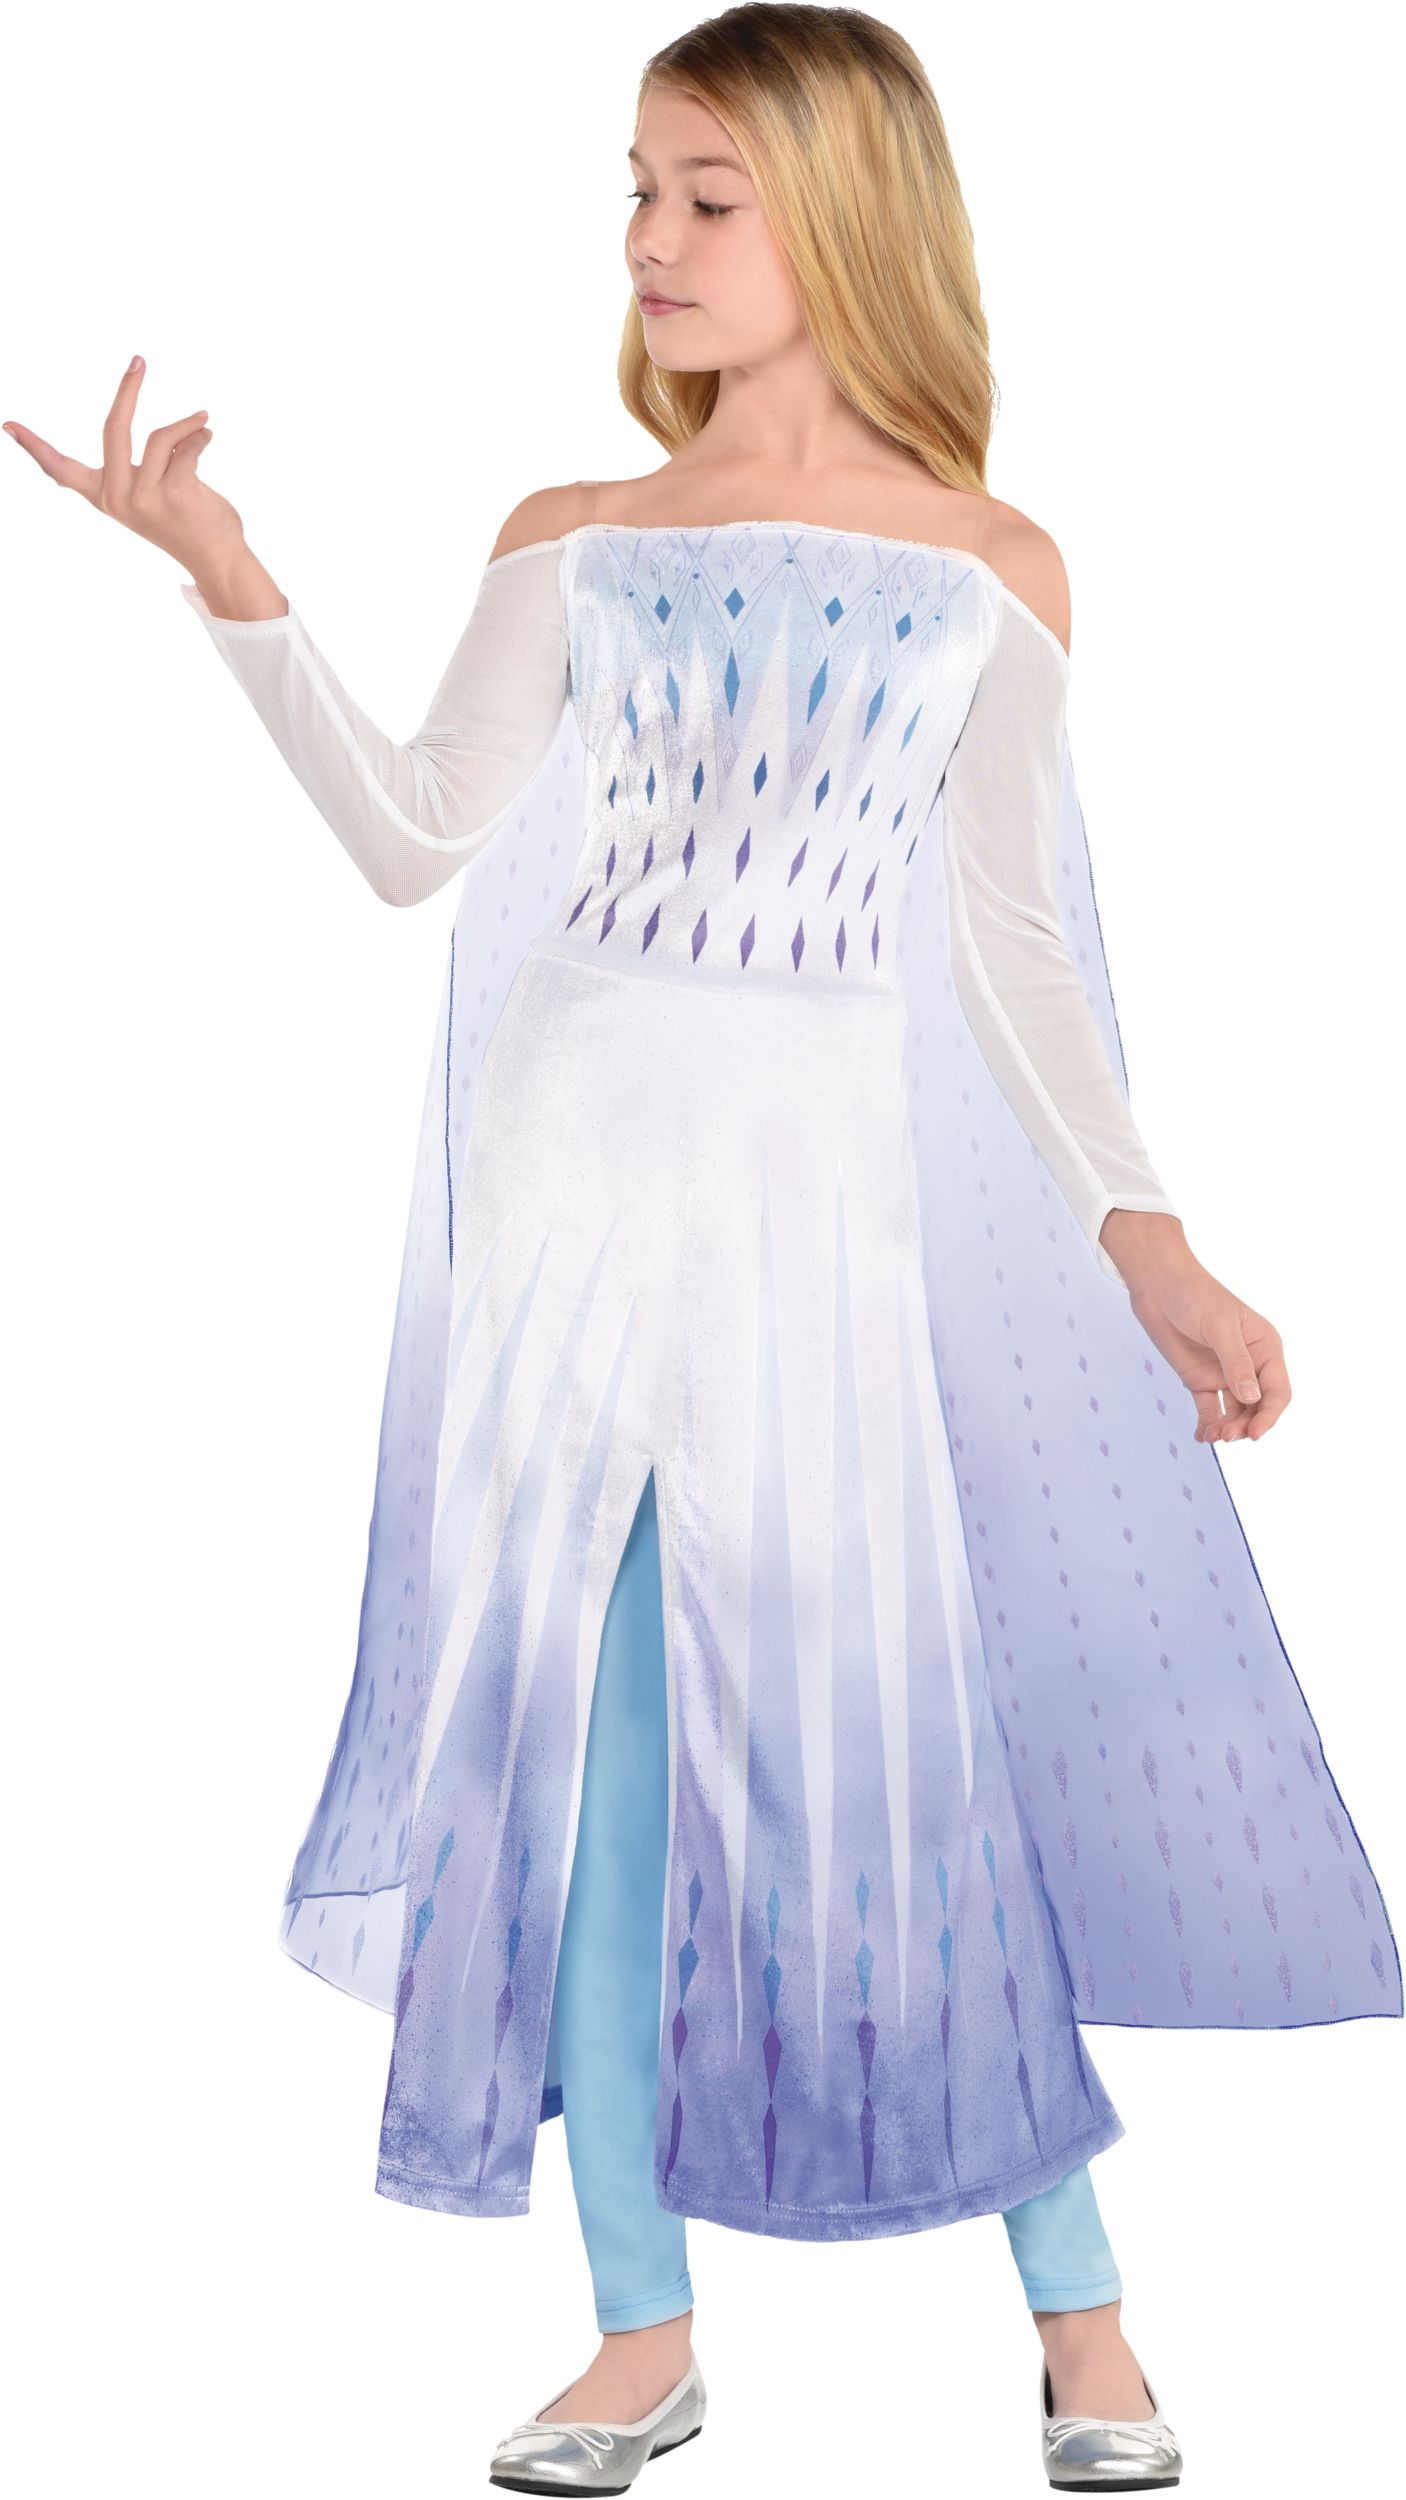 Bullyland Disney - Frozen 2 - Elsa Adventure Dress - Playpolis